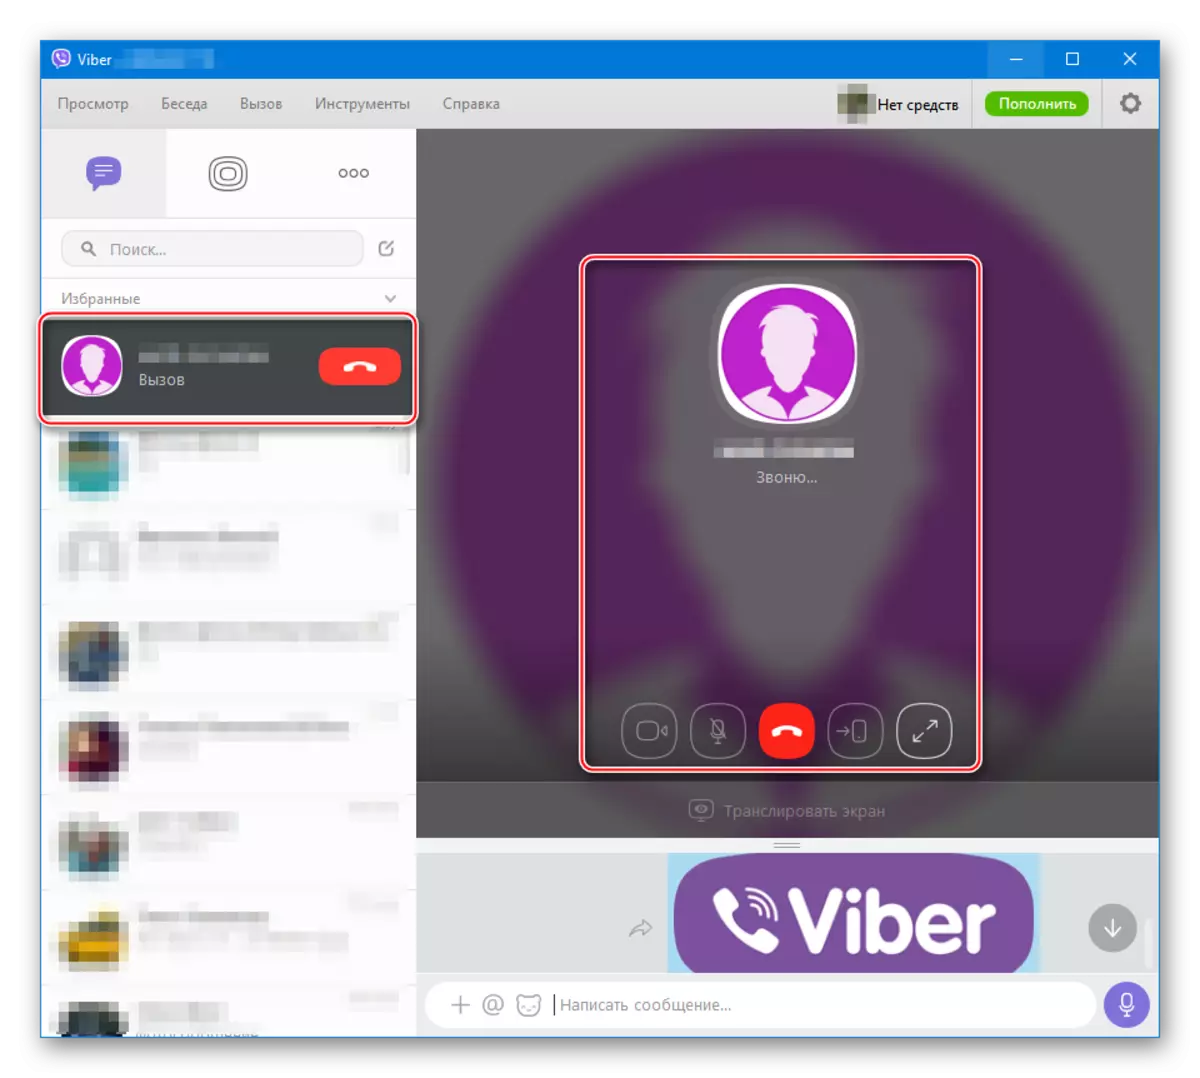 Viber för Windows-ljud och videosamtal via Messenger